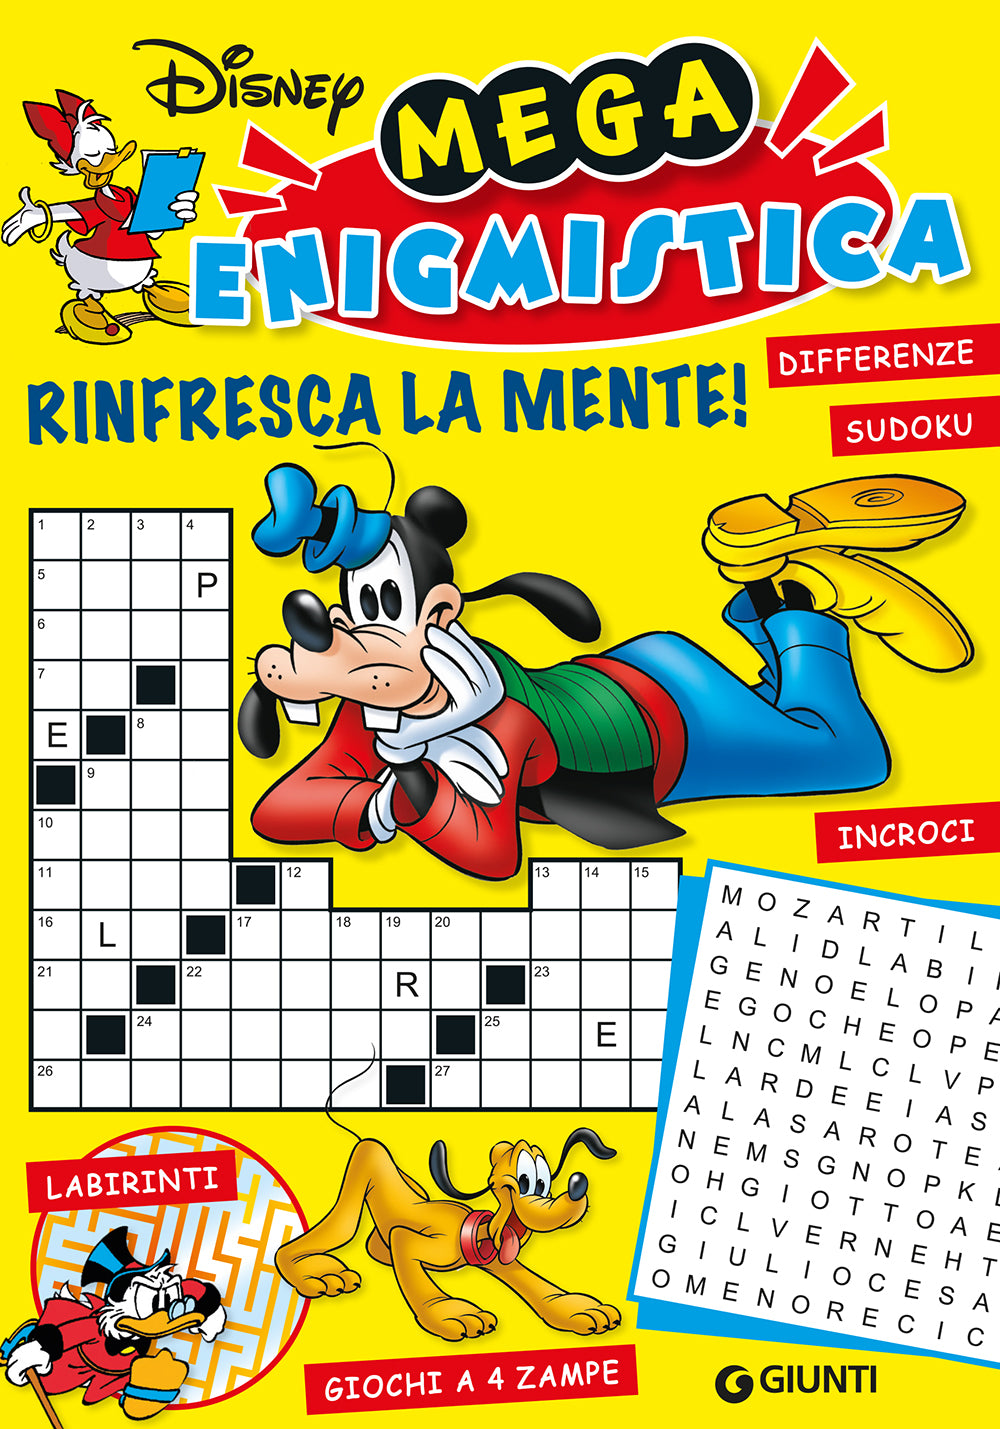 Mega Enigmistica Disney Rinfresca la mente. Differenze, Sudoku, Incroci, Labirinti, Giochi a 4 zampe